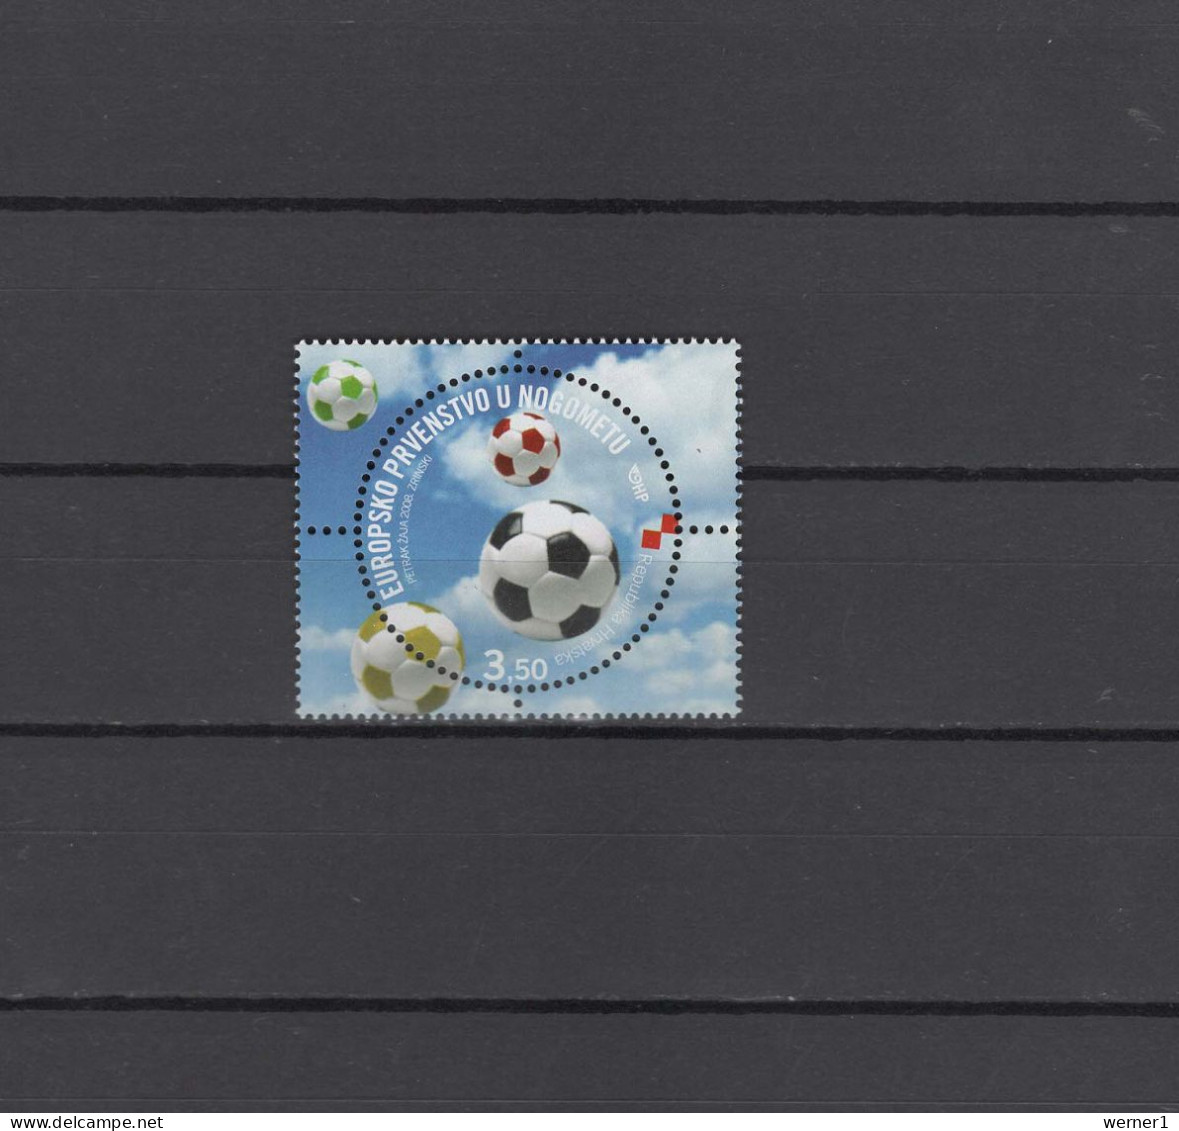 Croatia 2008 Football Soccer European Championship Stamp MNH - Fußball-Europameisterschaft (UEFA)